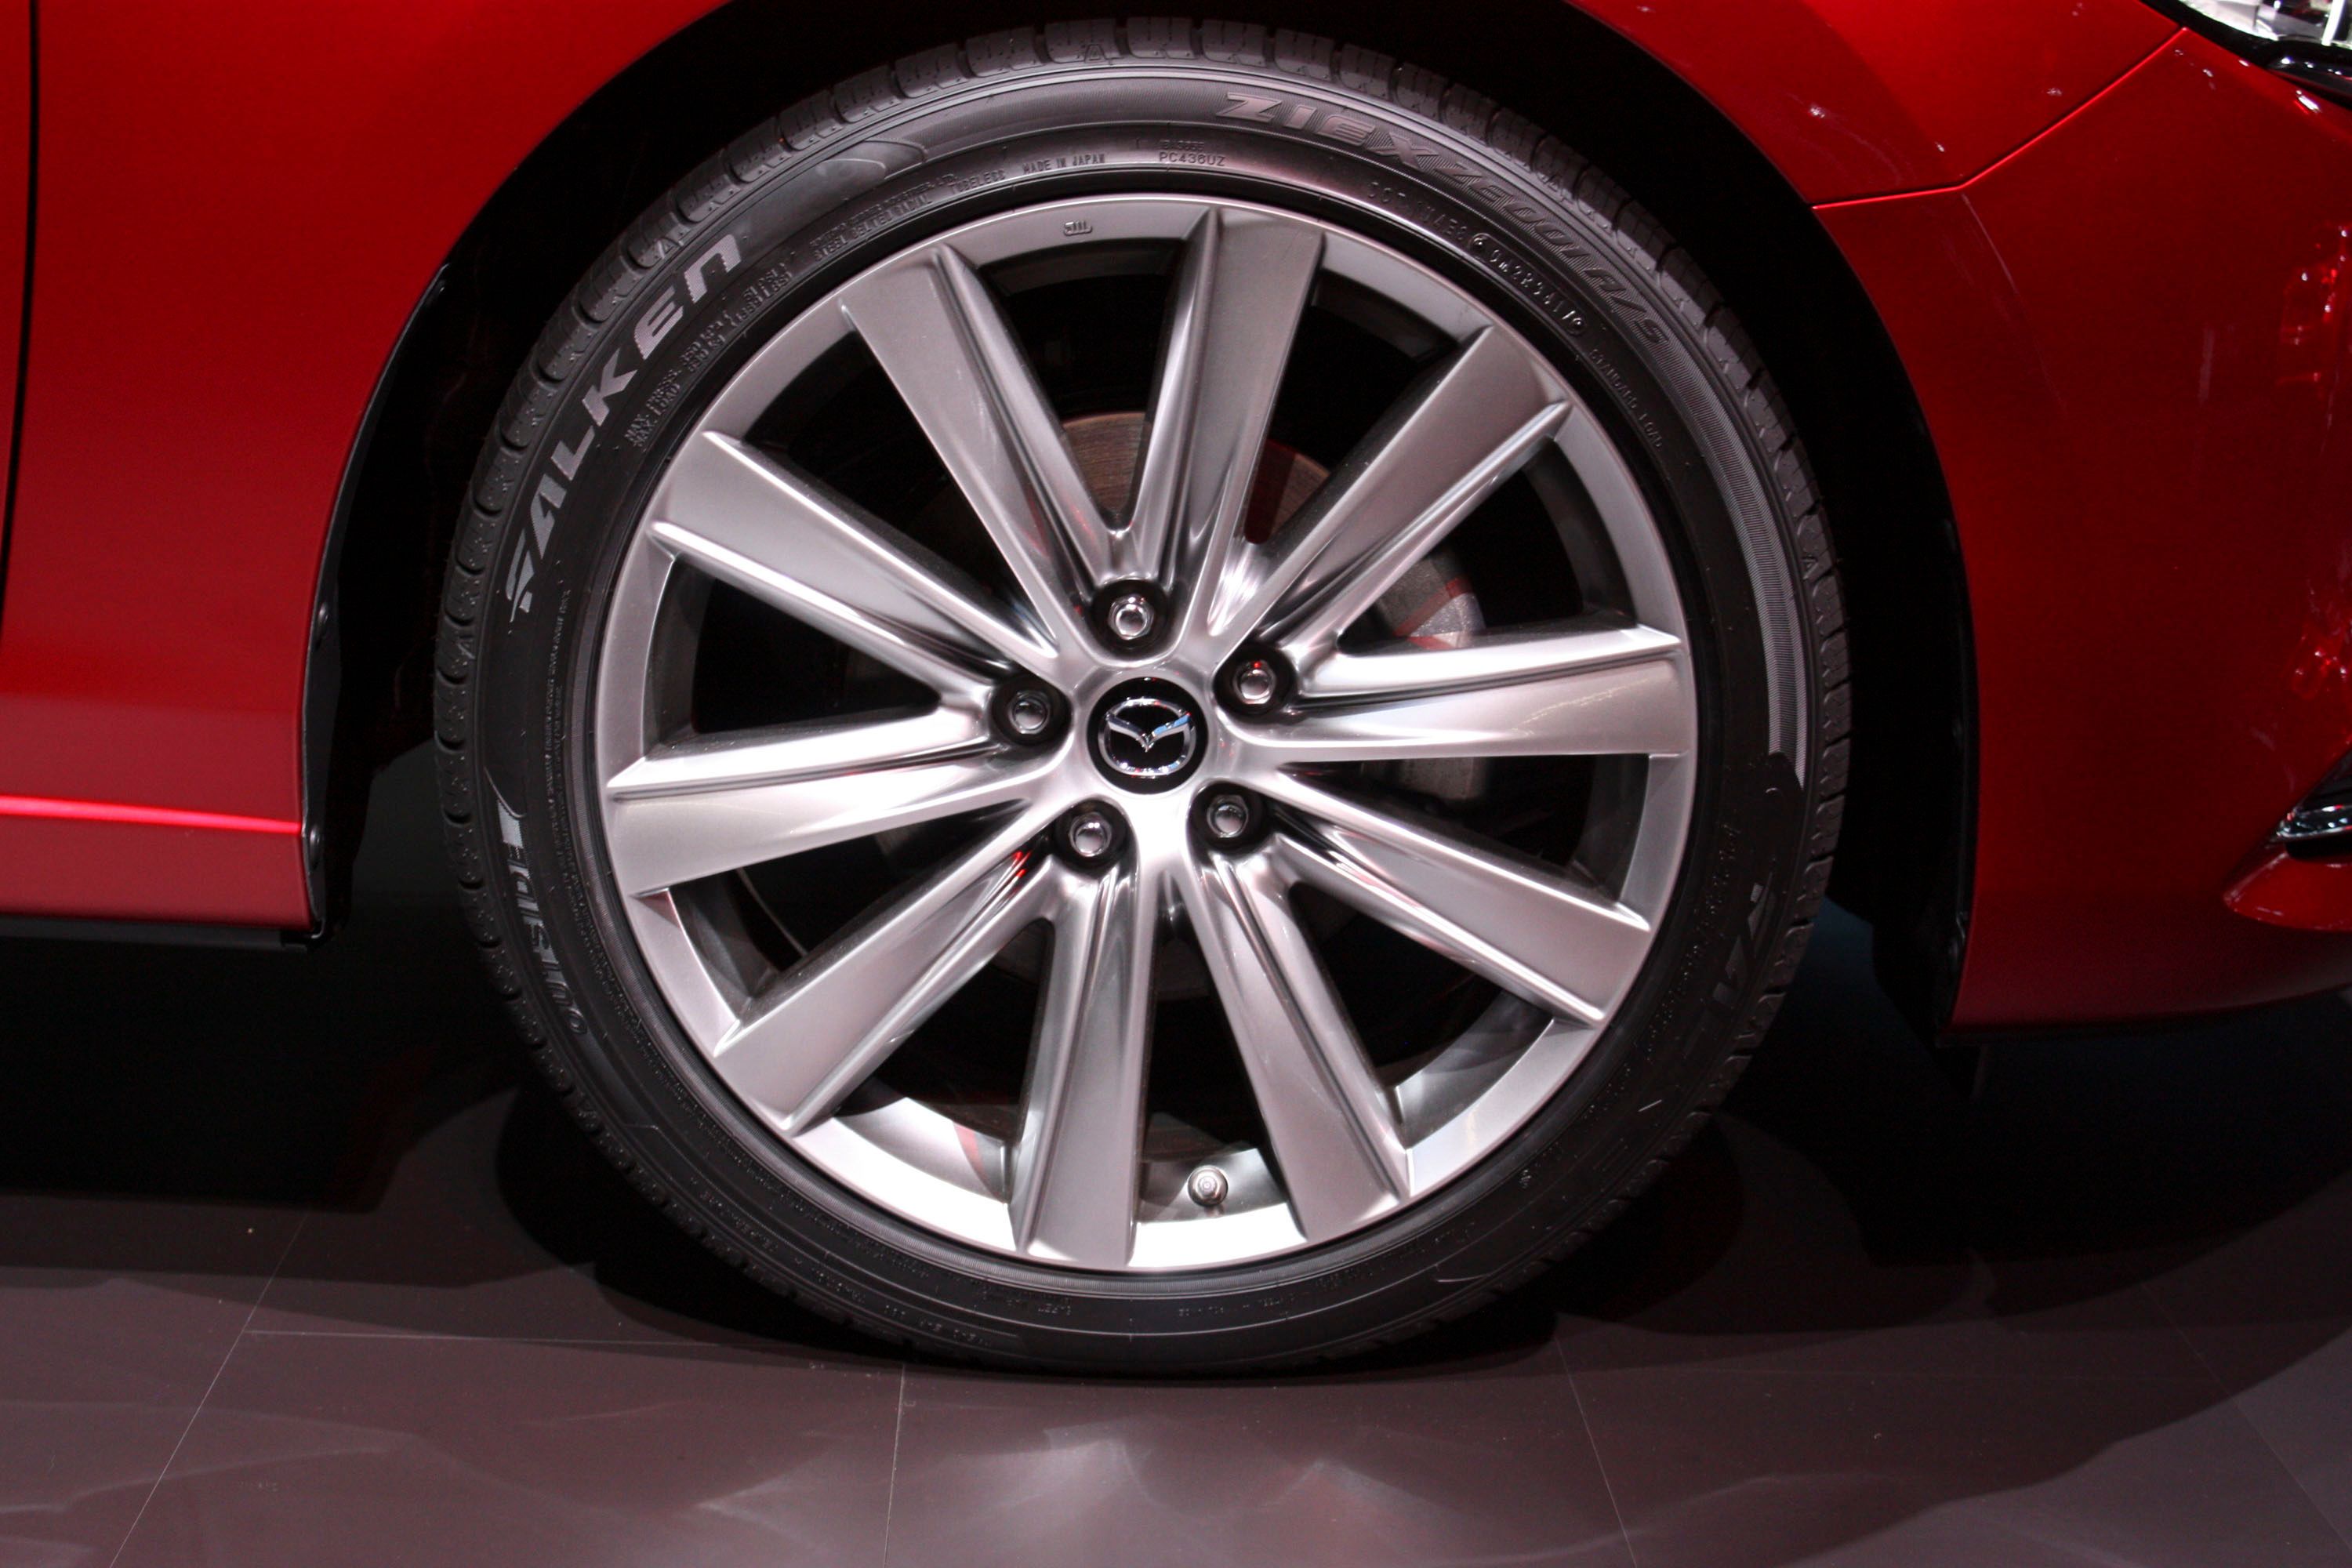 17-inch wheels as standard